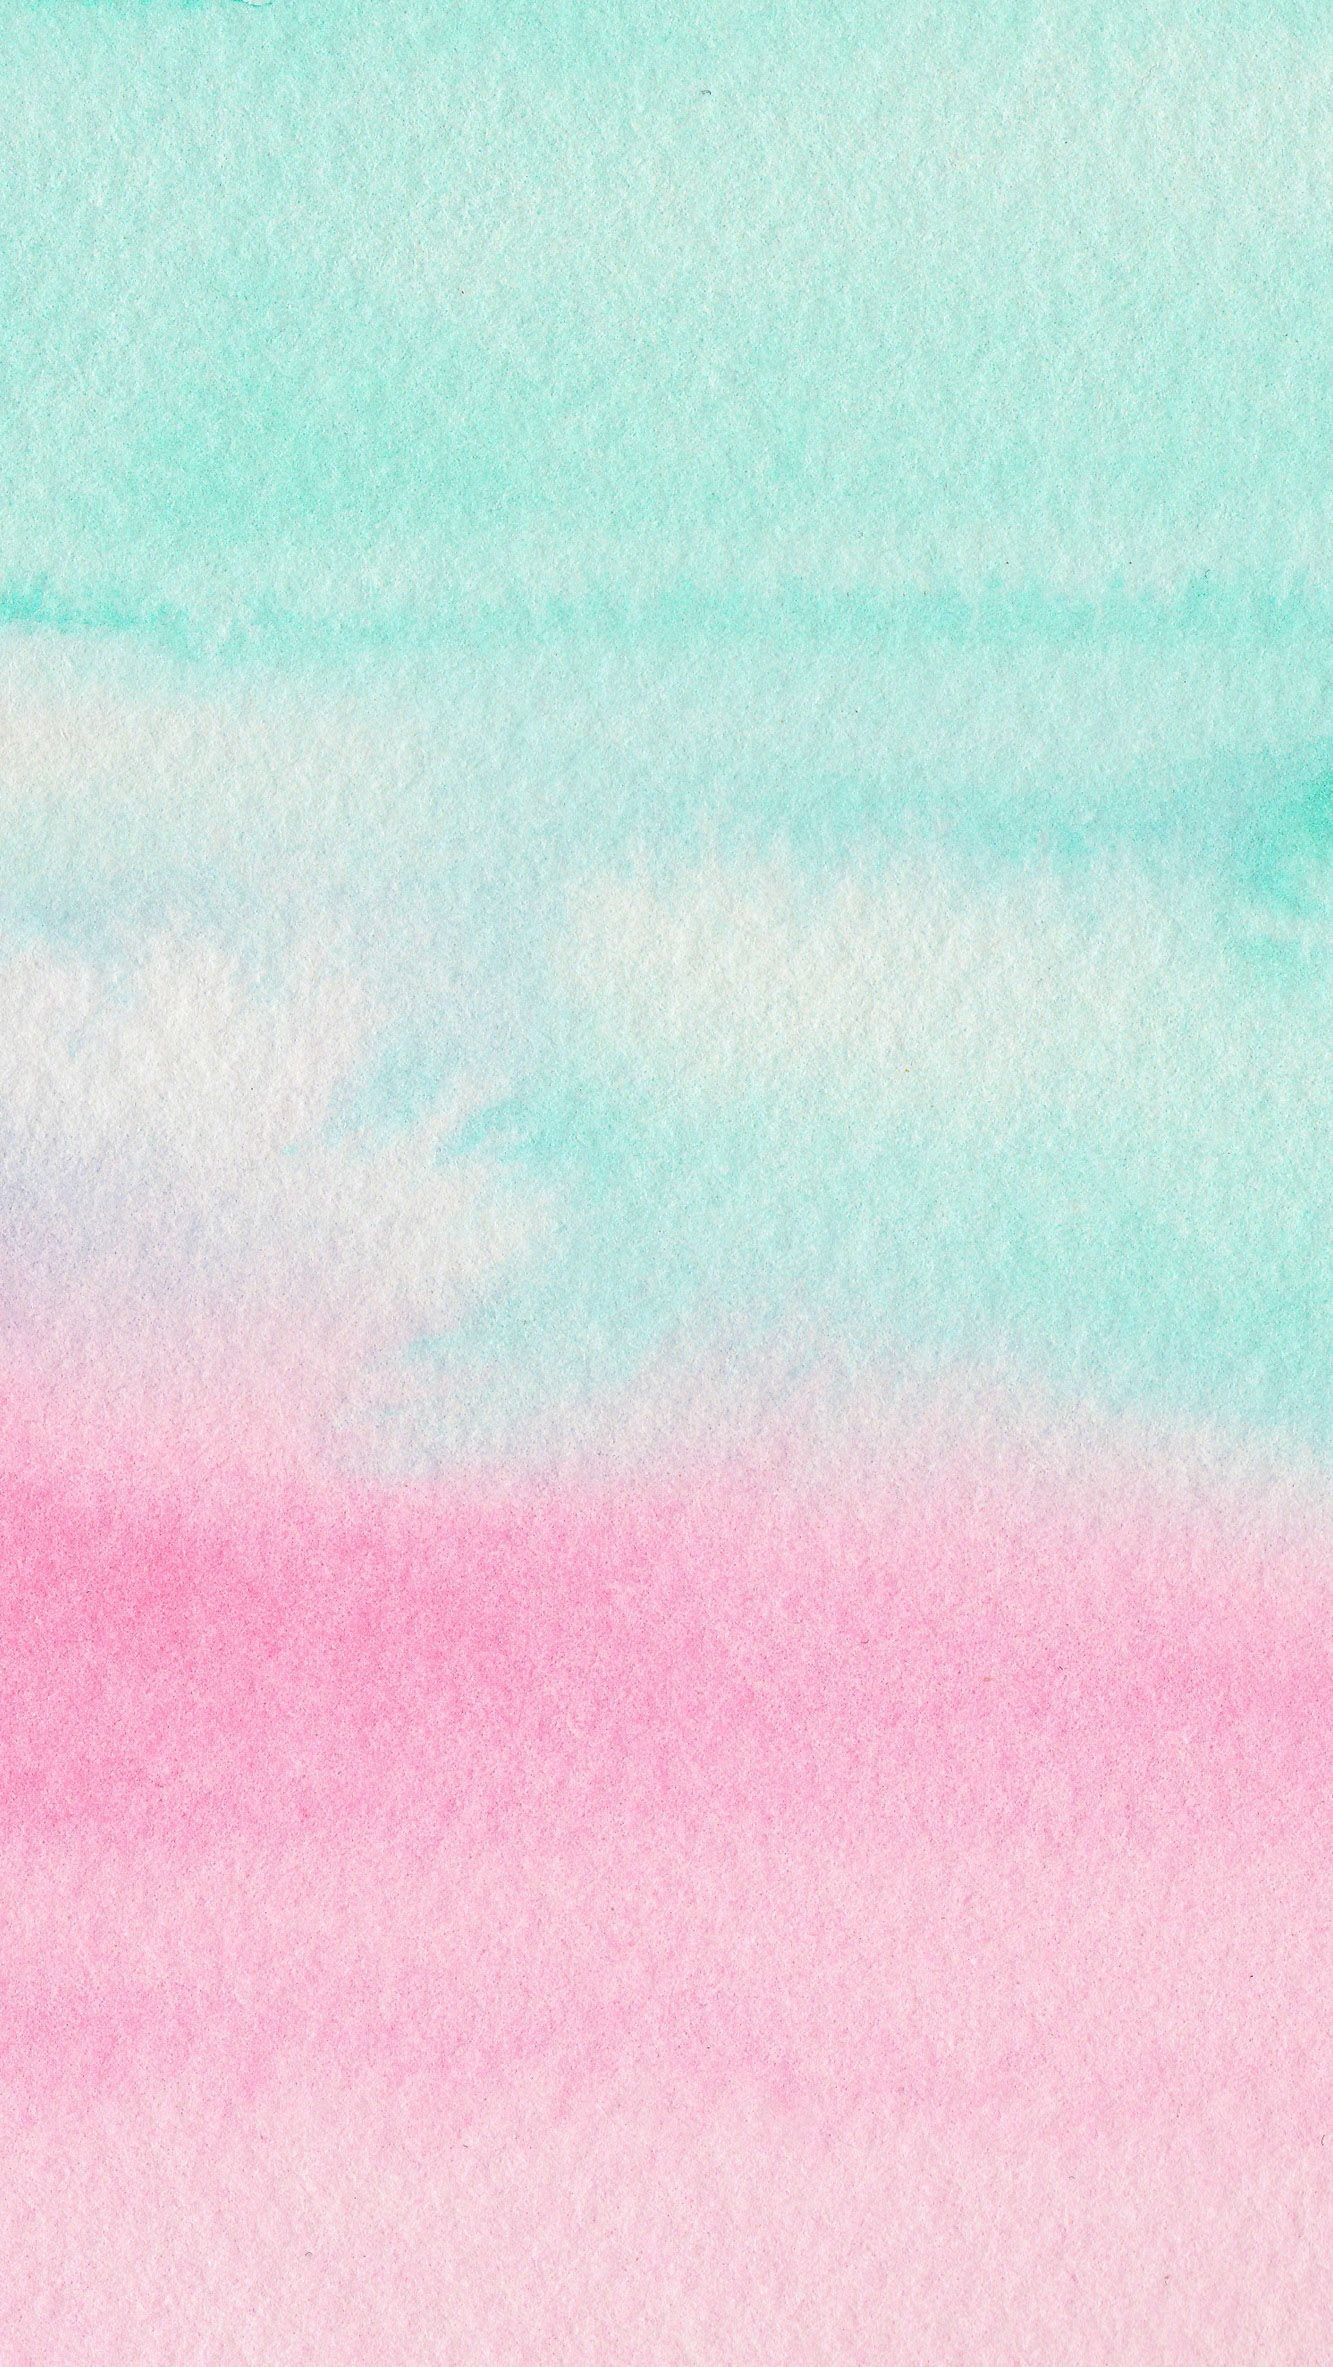 carta da parati color pastello hd,rosa,acqua,blu,turchese,cielo